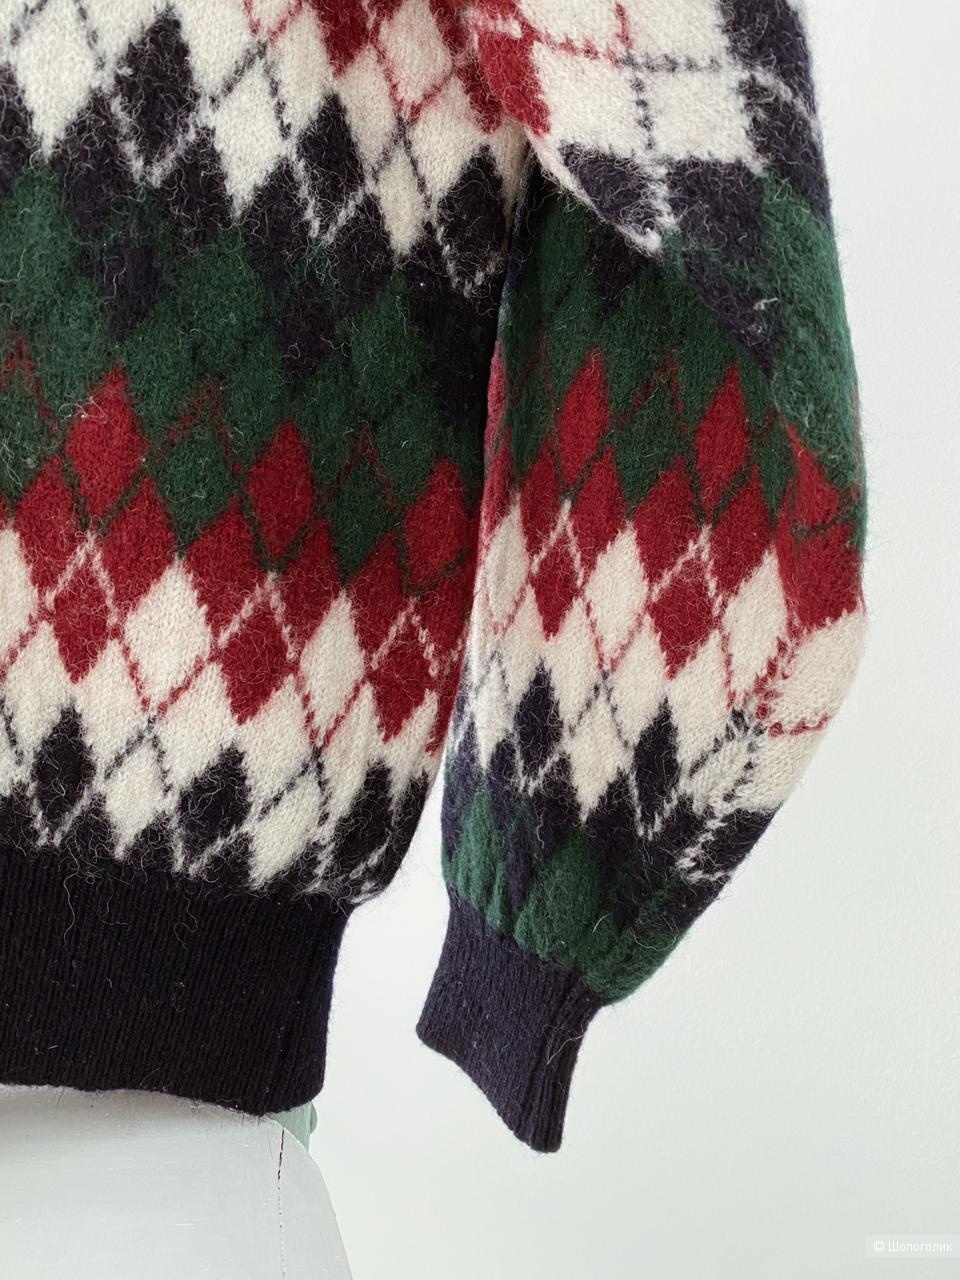 Шерстяной пуловер UnderWood размер XS-S-M